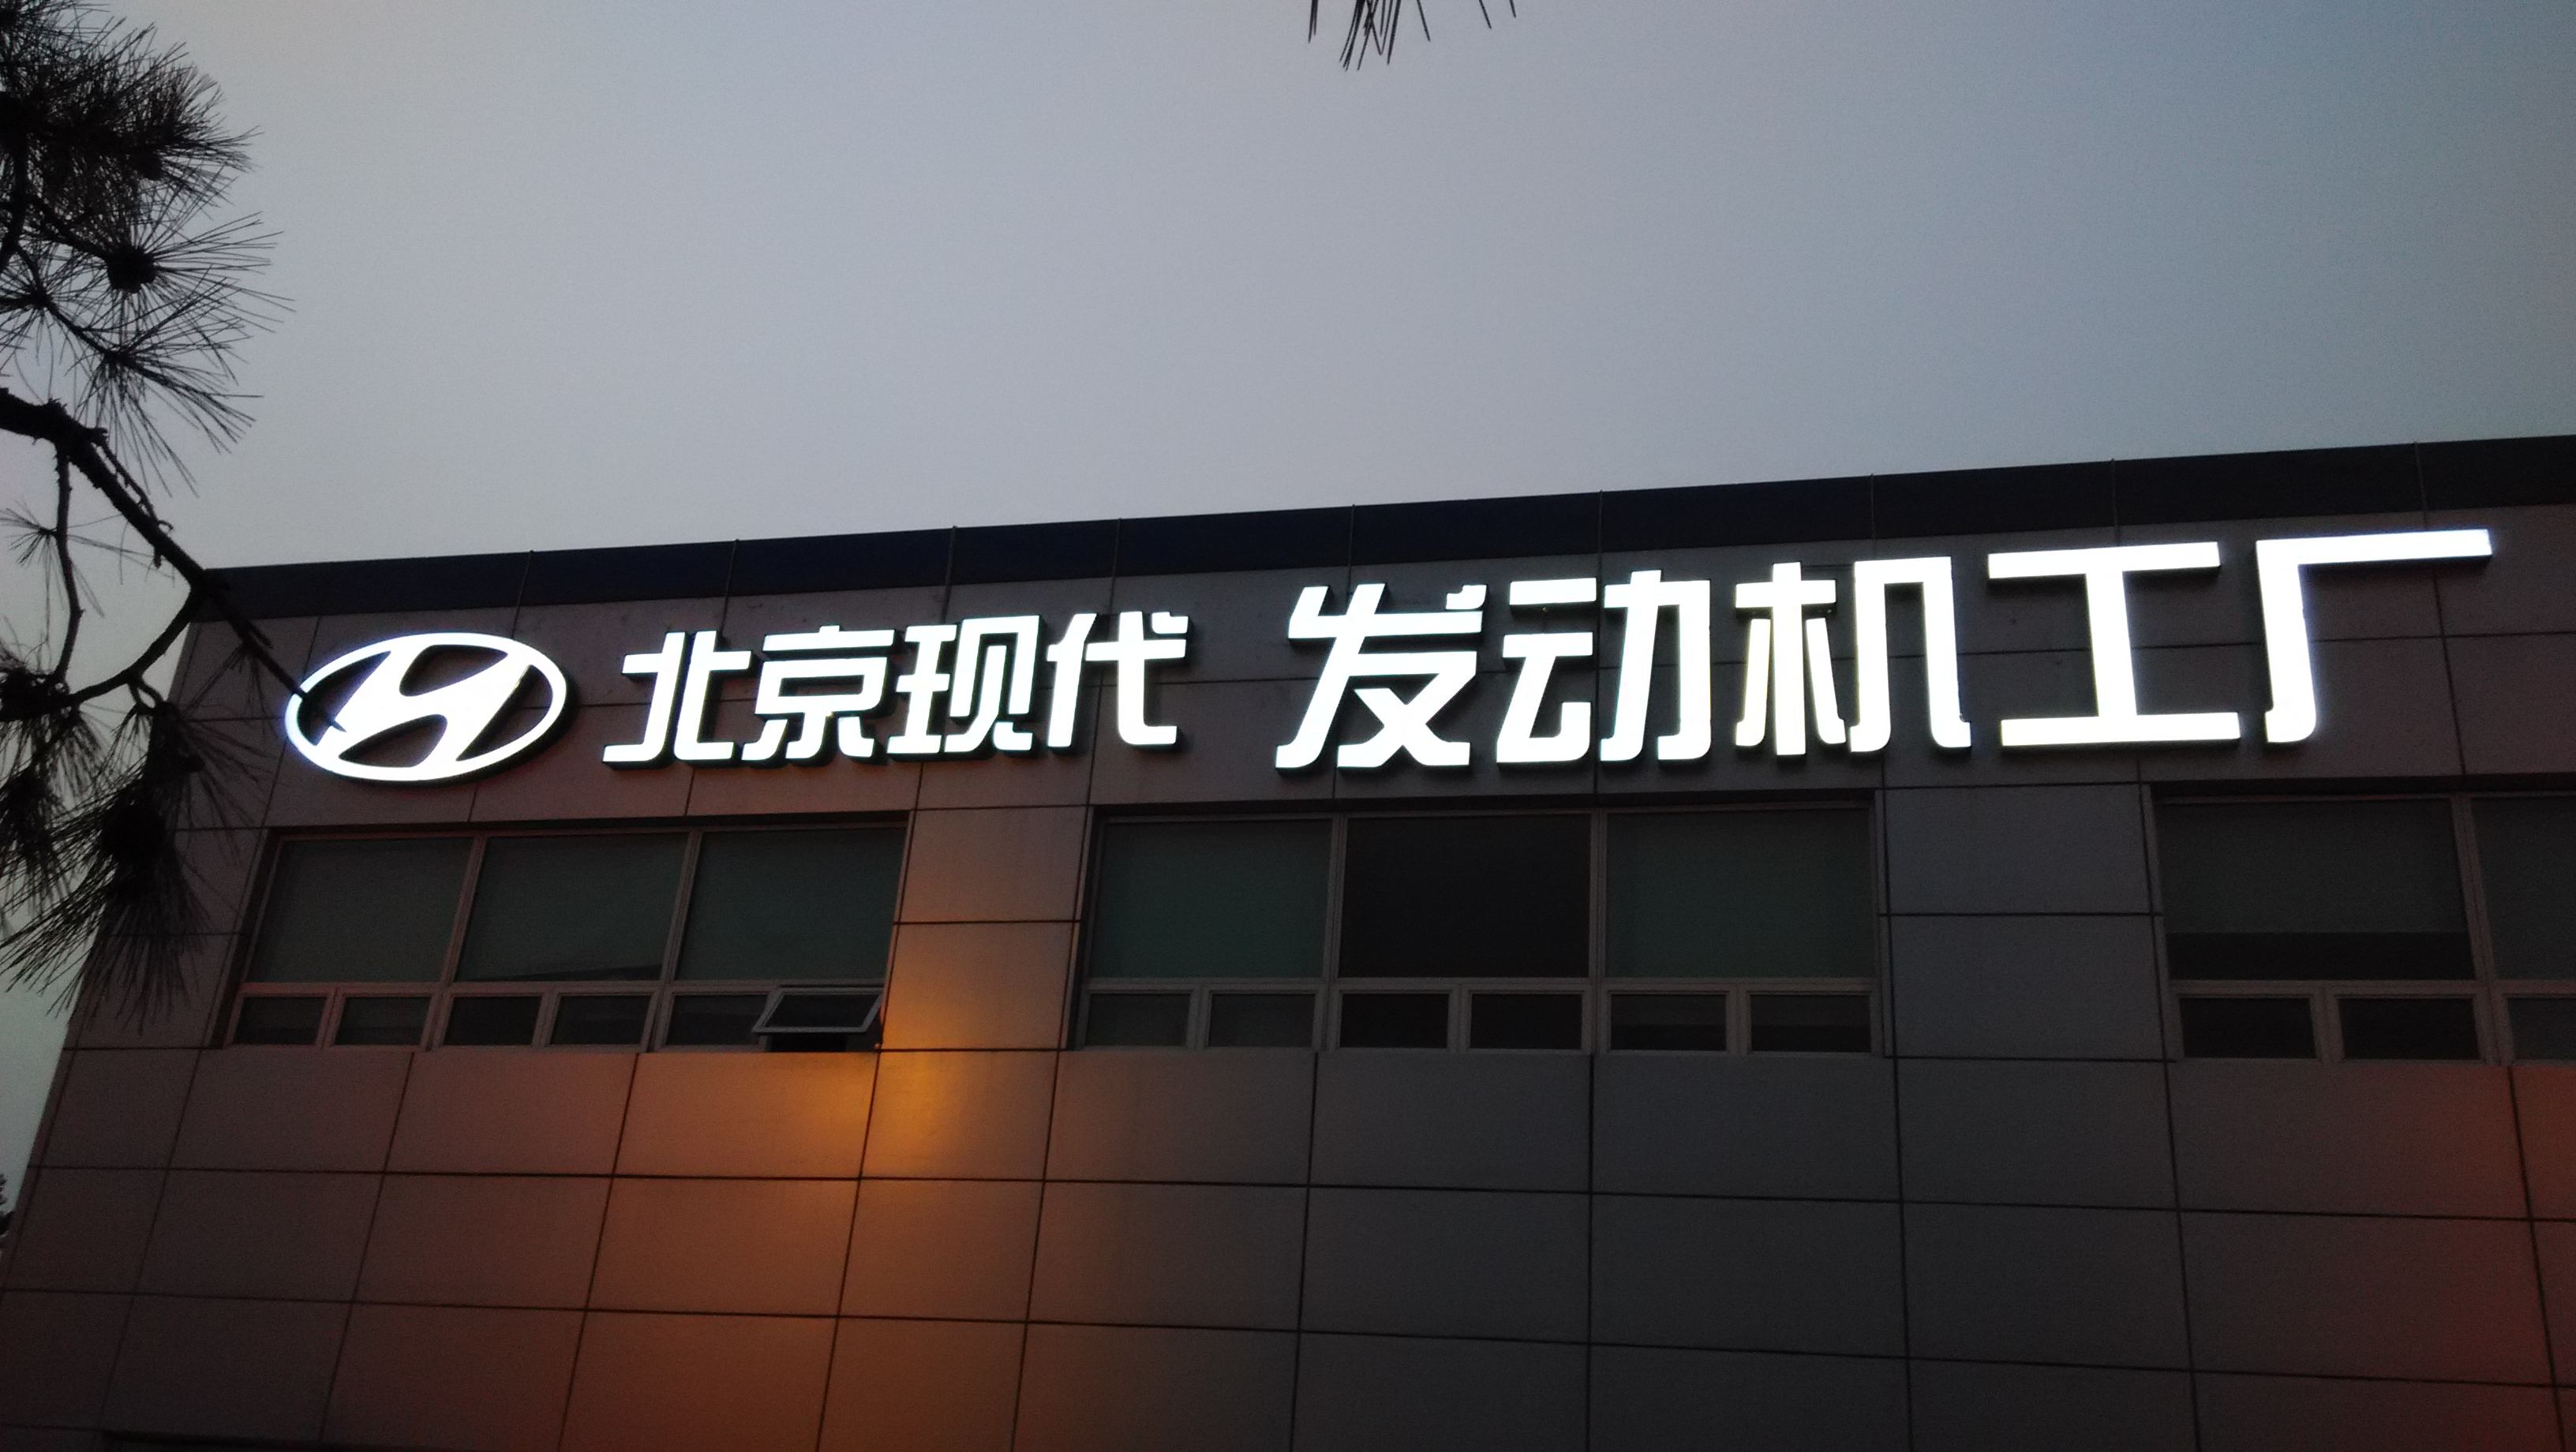 北京通州LED发光字报价 北京通州LED发光字设计公司